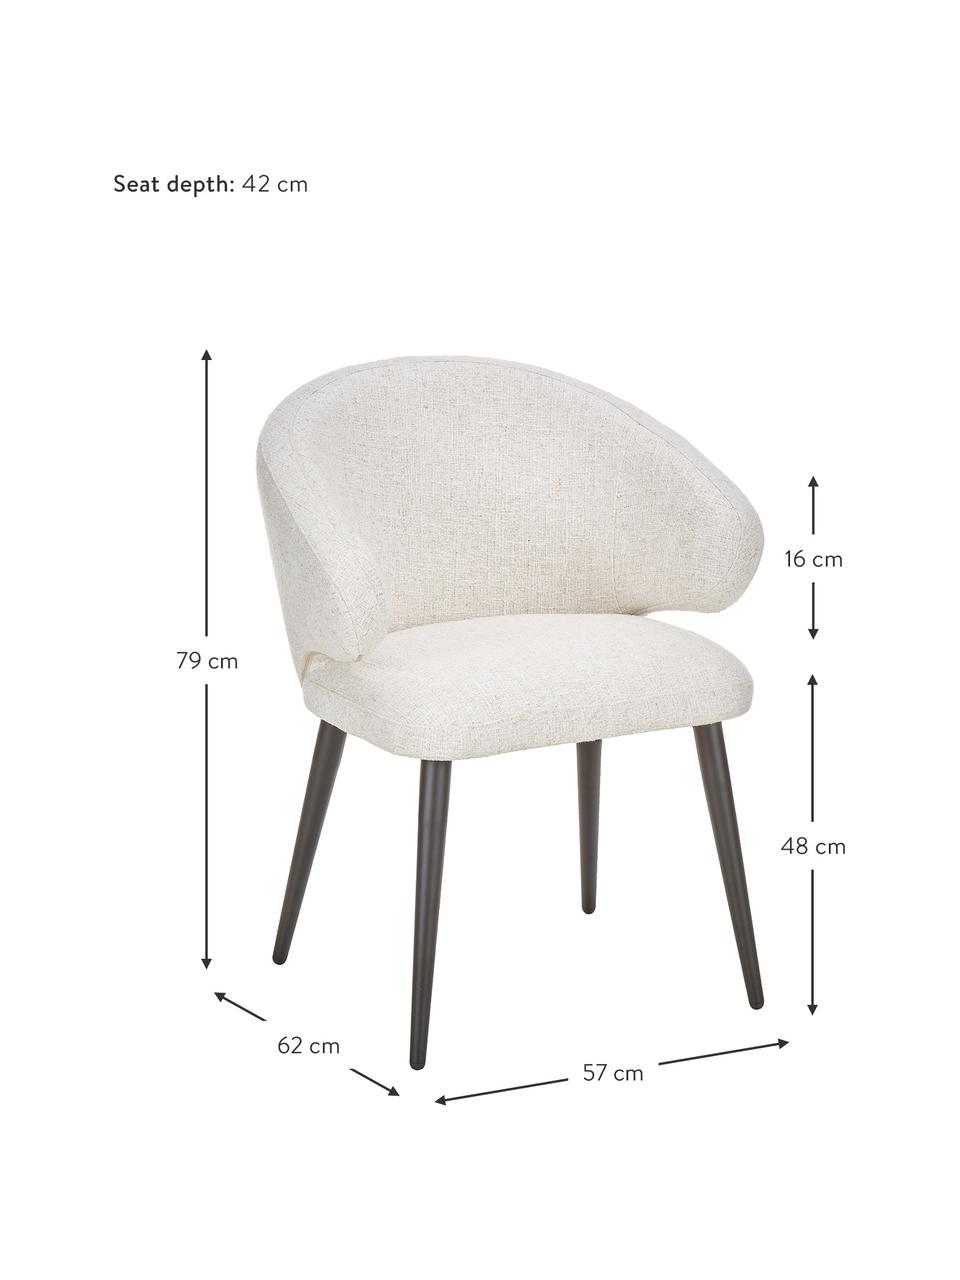 Chaise design moderne tissu bouclé Celia, En tissu bouclé blanc crème, larg. 57 x prof. 62 cm